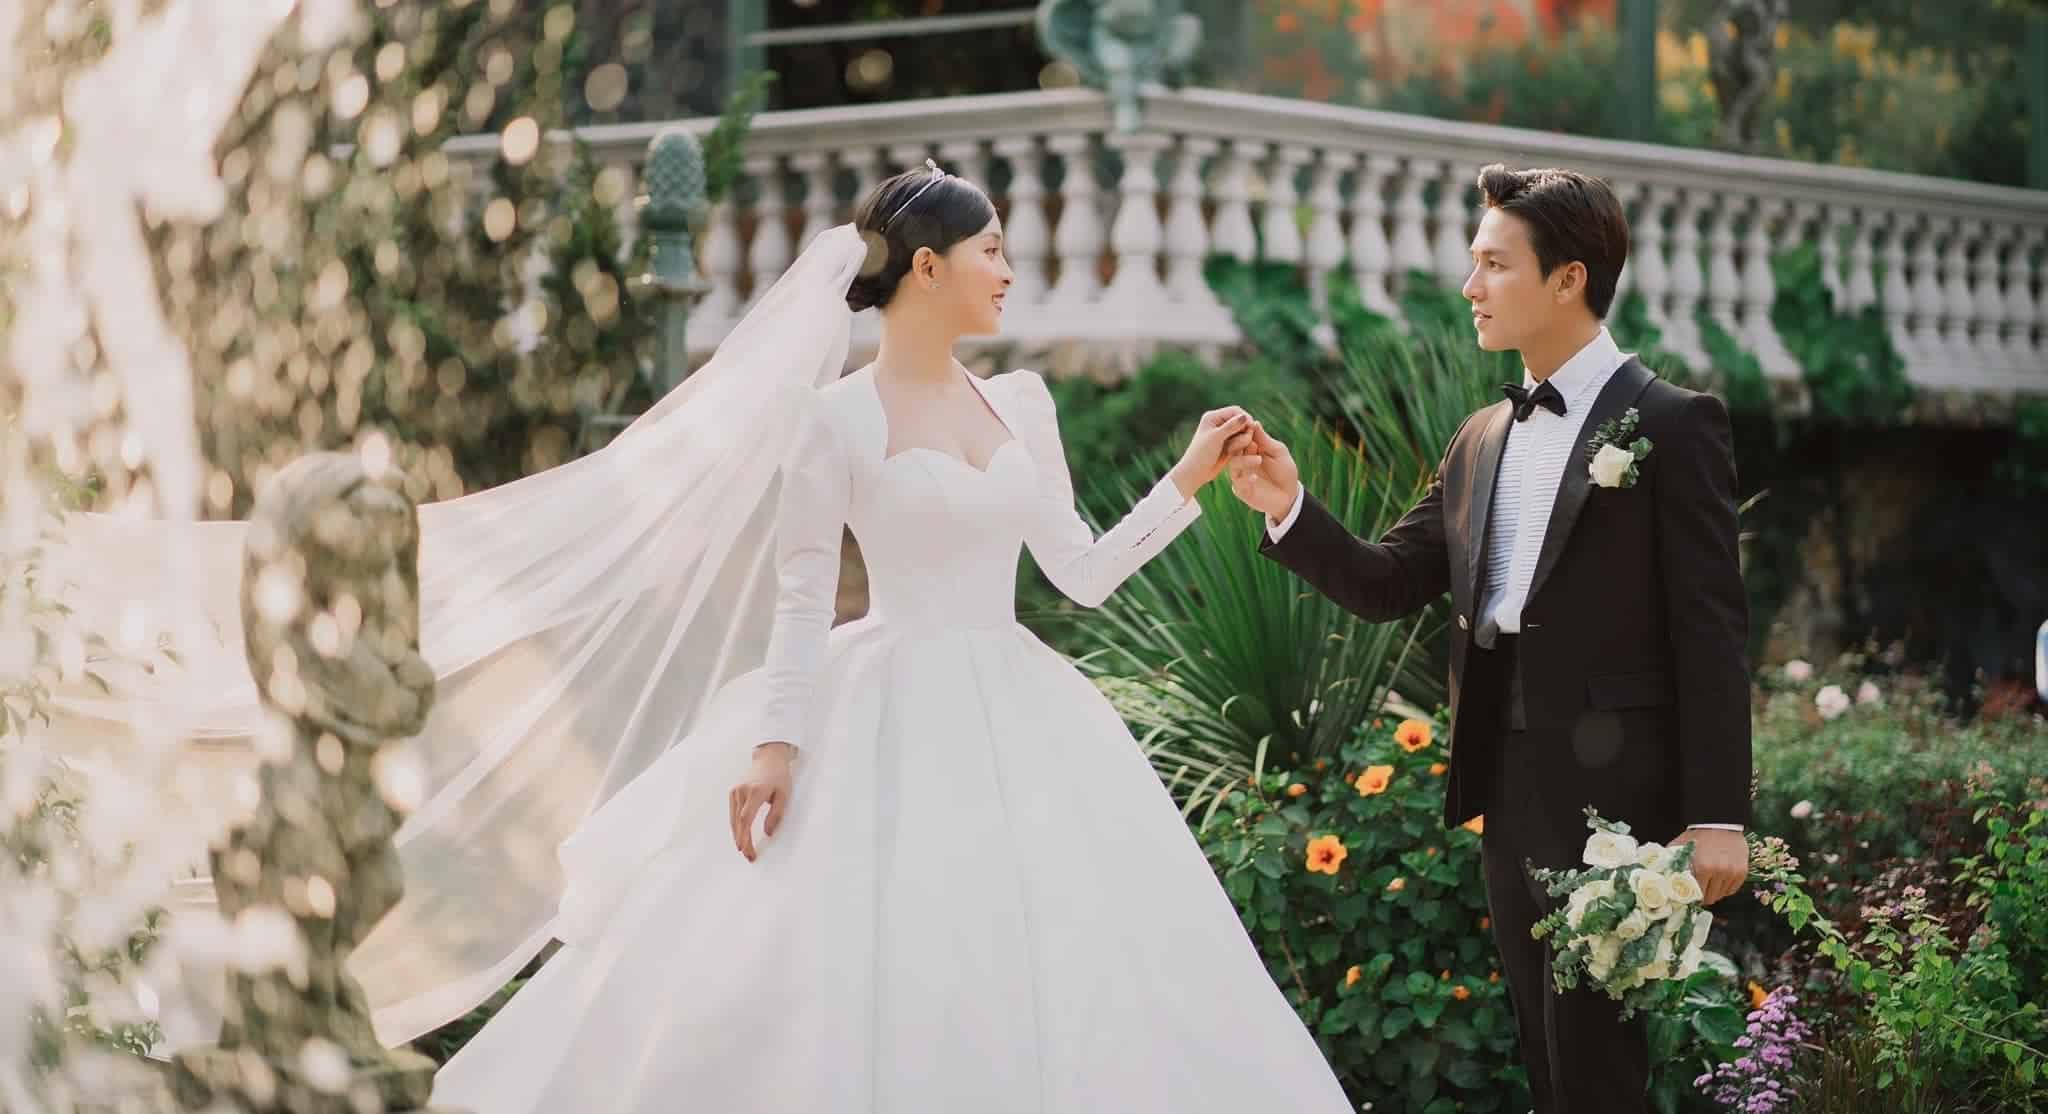 Ảnh cưới đẹp phong cách Hàn Quốc ấn tượng.